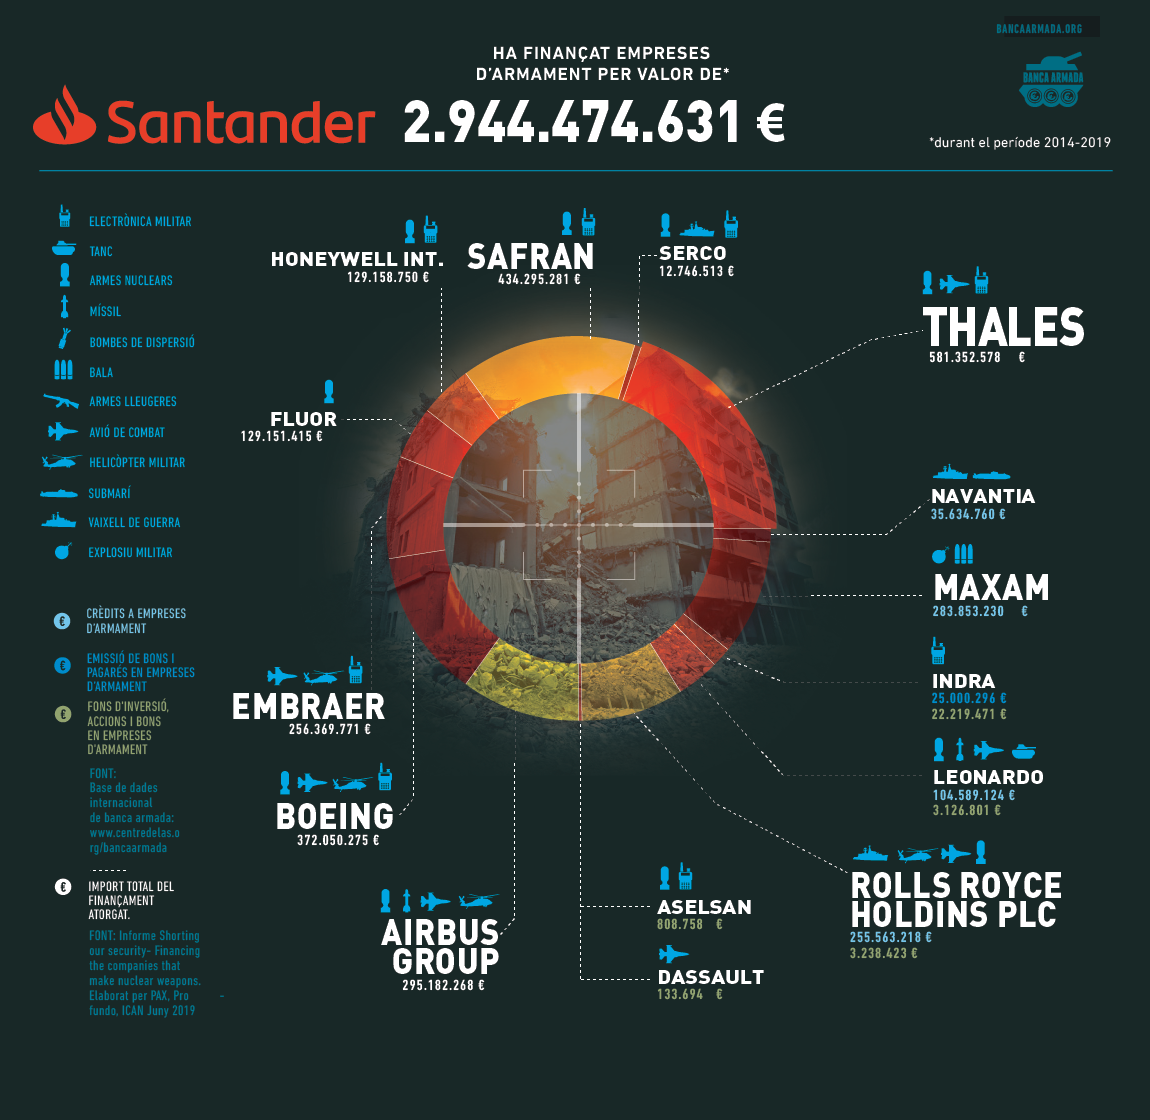 Infografia “Banco Santander: finançament a empreses d’armament 2014-2019”